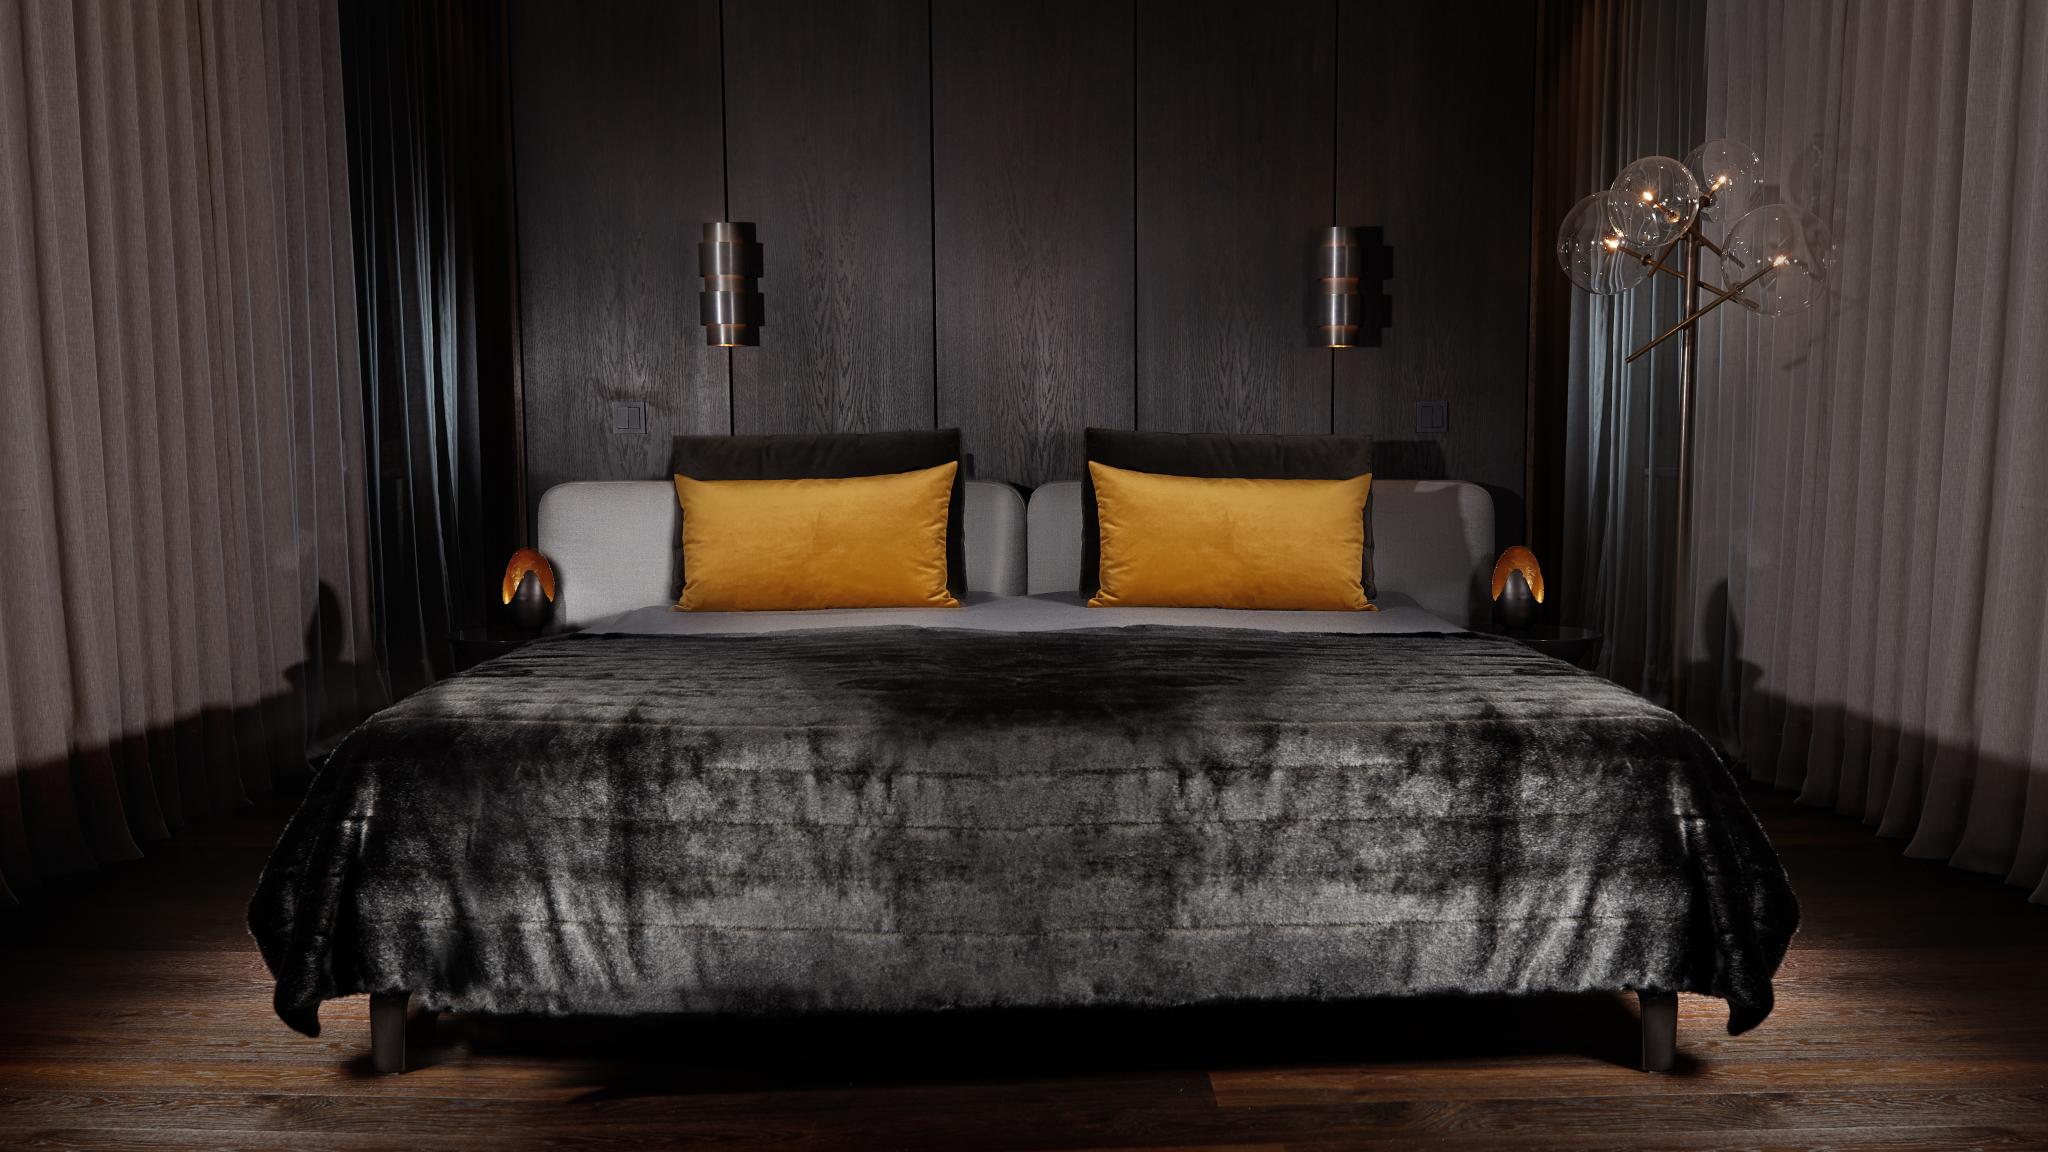 Webpelzdecke Nerzoptik Aspen schwarz extravagant exklusiv edel weich kuschlig glänzend als Tagesdecke für das Schlafzimmer